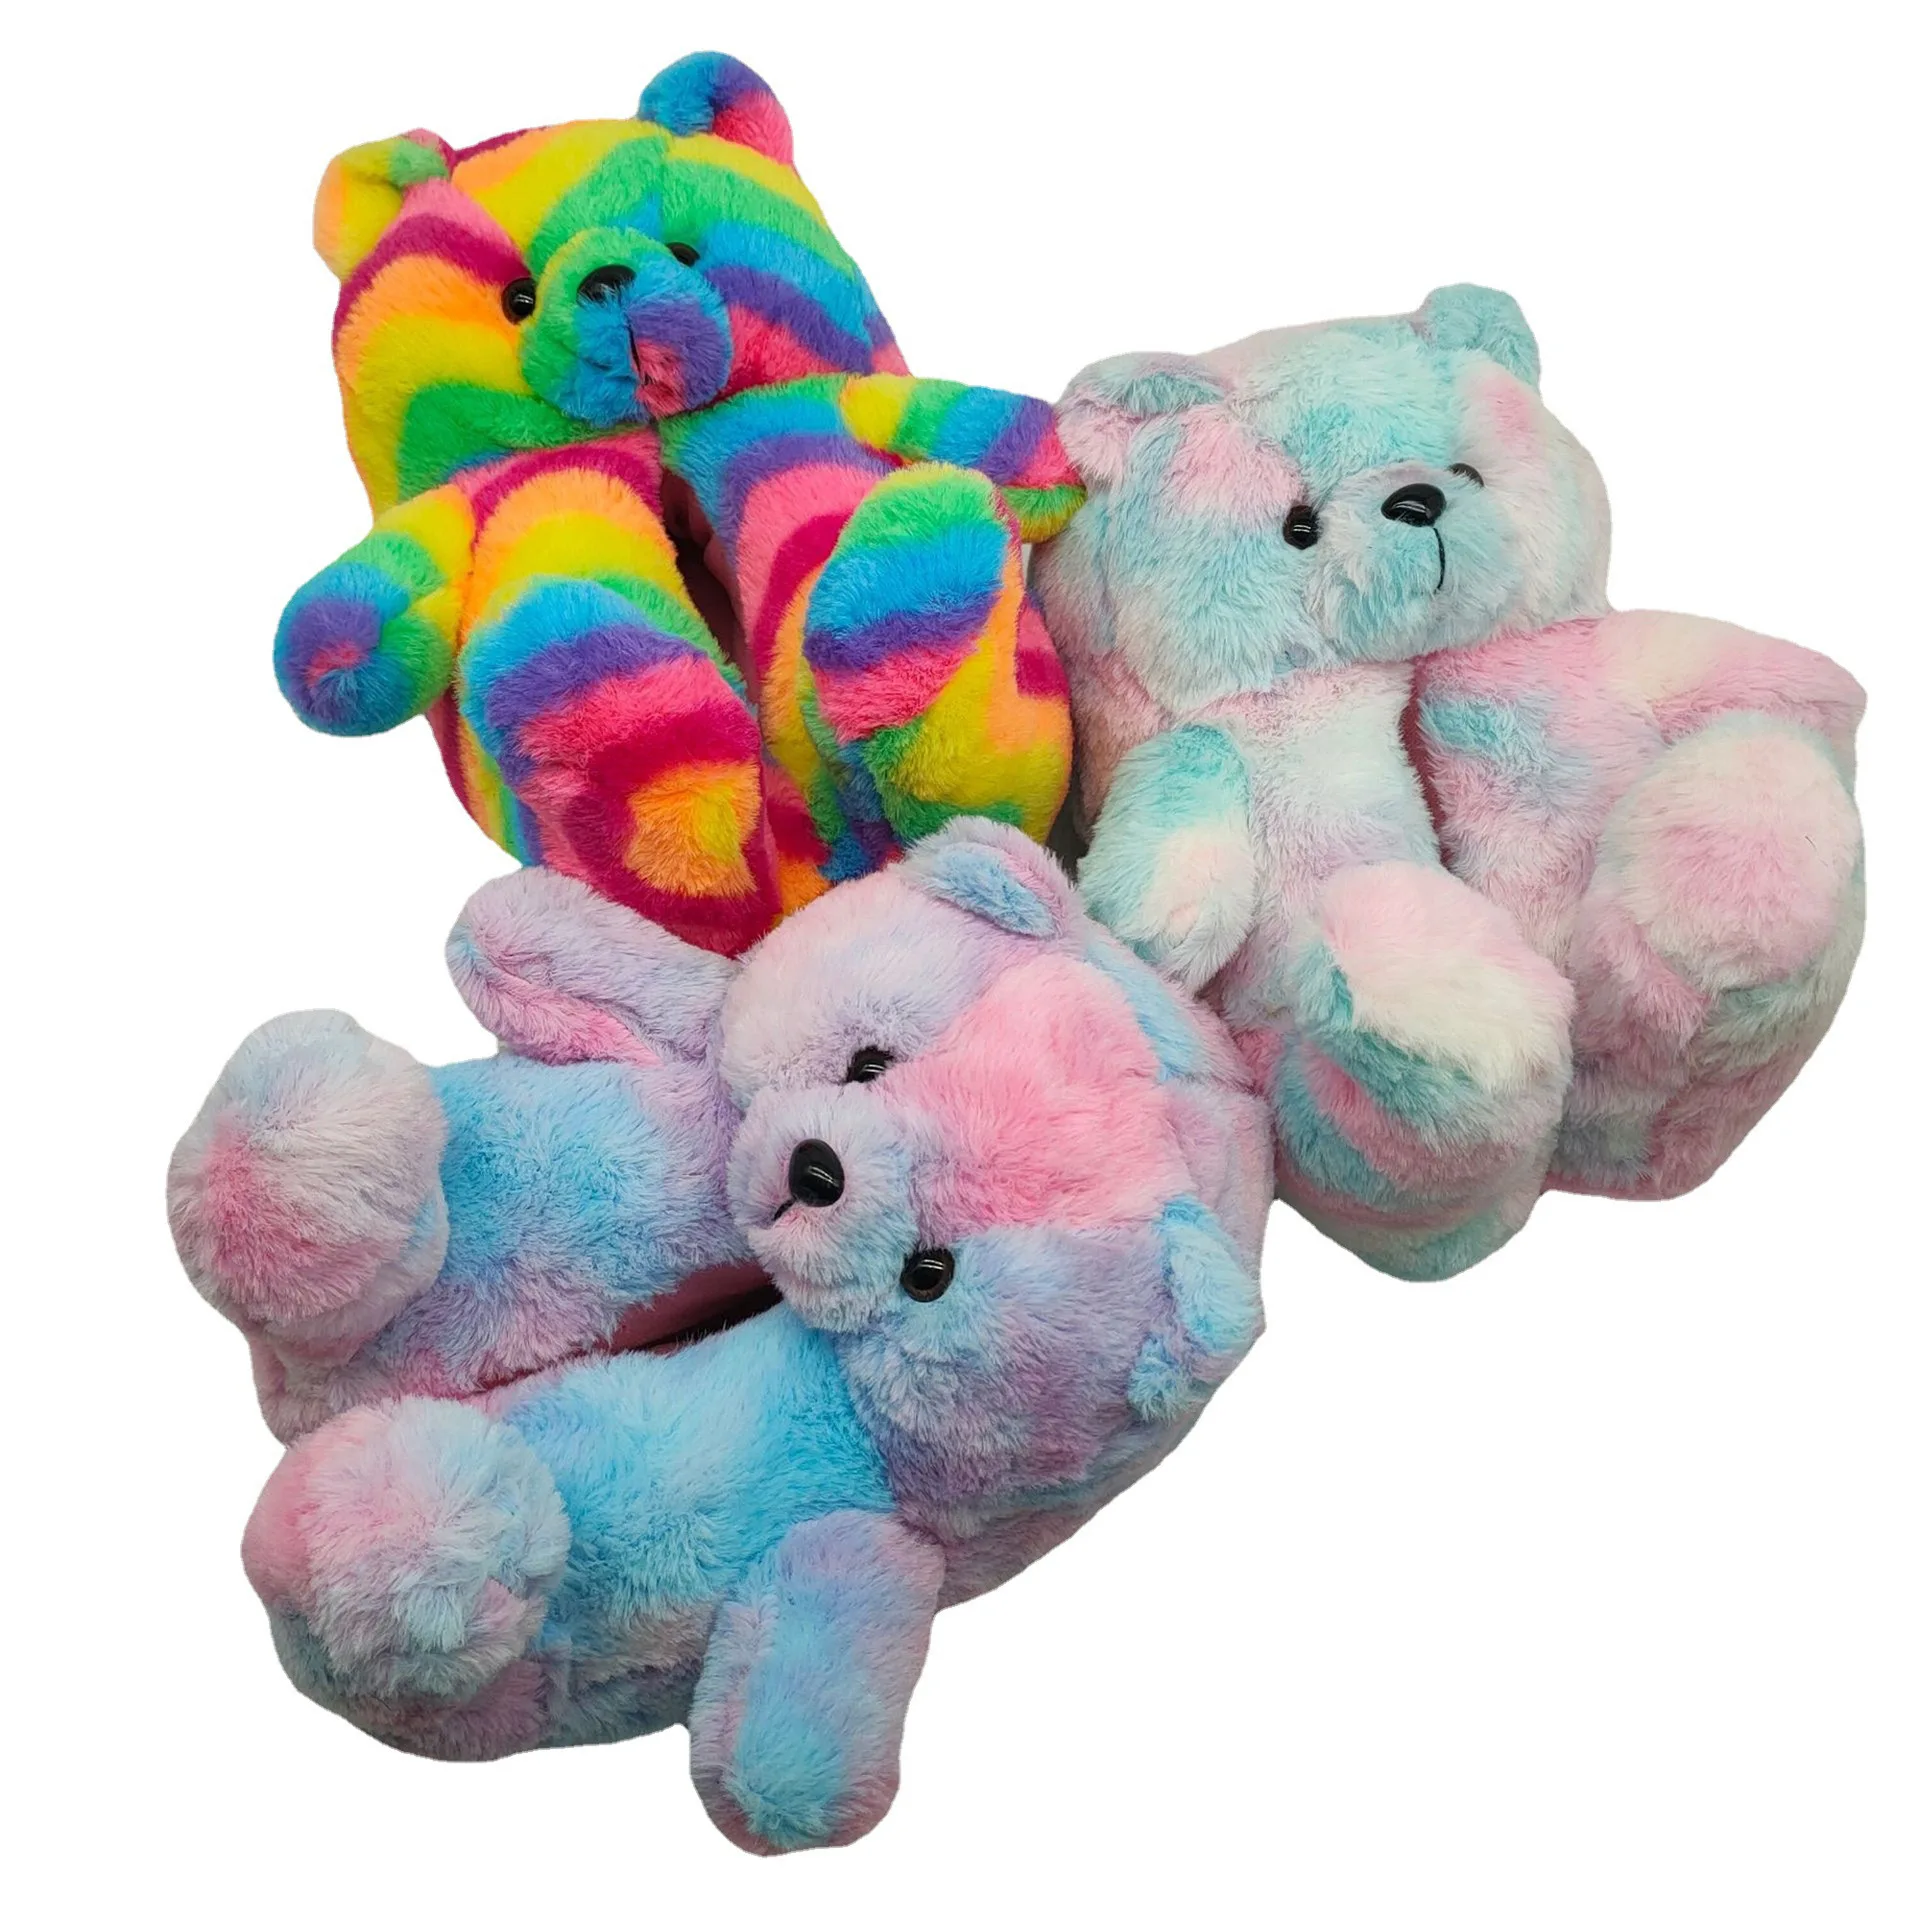 

Adult Lovely Teddy Bear Slippers Indoor Fuzzy Slipper Animal Plush For Girls Fluffy Bedroom Cute House Slippers